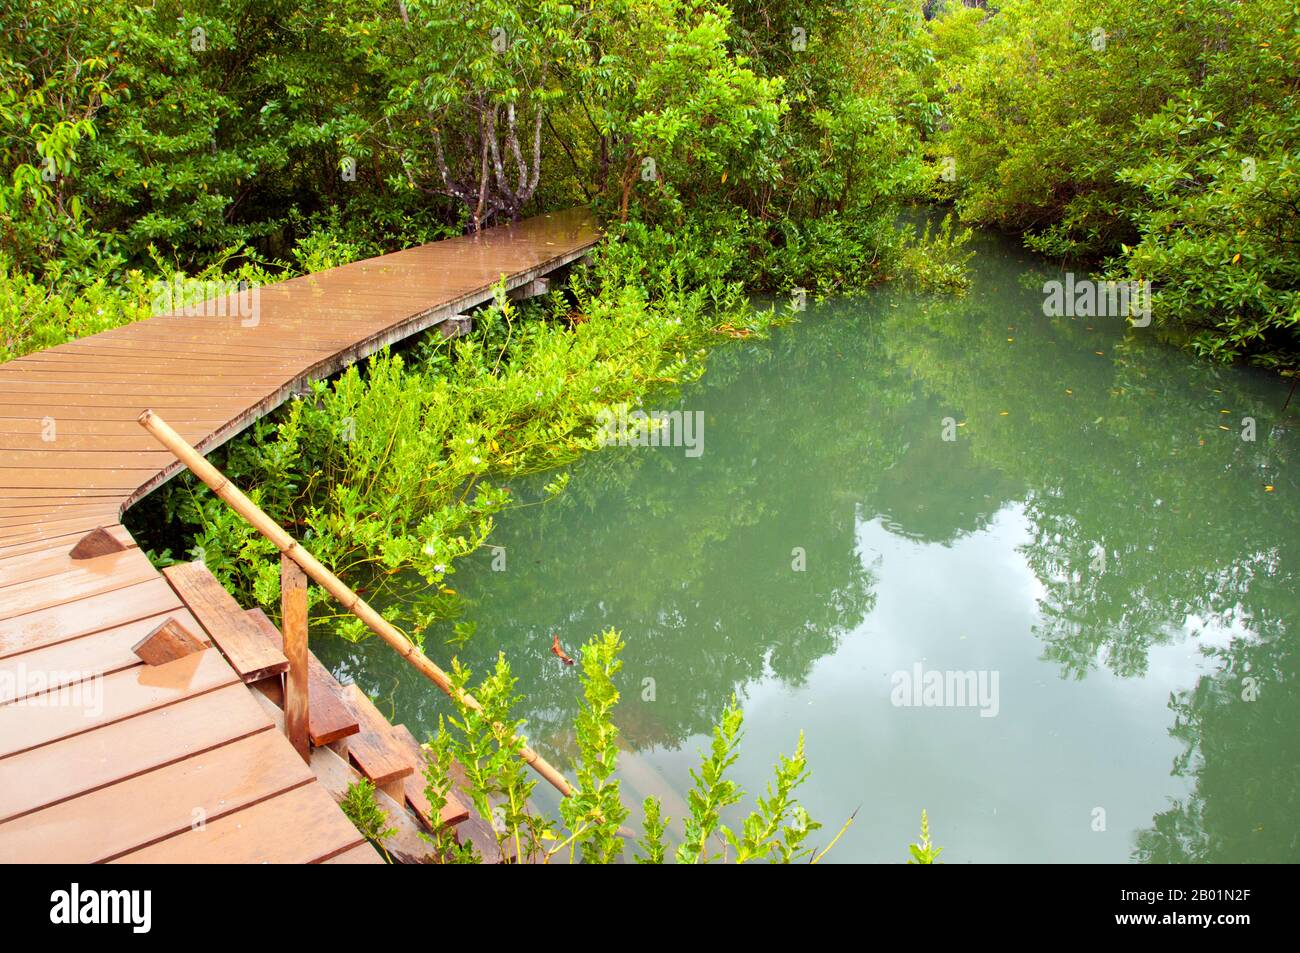 Thailandia: Una passerella di legno conduce attraverso la palude e la foresta di Tha Pom, la costa di Krabi. Tha Pom (il nome completo in thailandese è Pa Phru Tha Pom Khlong Song Nam) è una palude di torba e una foresta che corre principalmente da una piscina chiamata Chong Phra Kaew lungo un corso d'acqua naturale. La gente locale chiama questo canale Khlong Song Nam o "due tipi di canale d'acqua", perché l'acqua dolce limpida si incontra e si fonde con l'acqua di mare con l'alta marea, dando luogo a un ambiente naturale in cui le palme di Lumphi (Eleiodoxa conferta) si incontrano e si mescolano con la foresta di mangrovie. Foto Stock